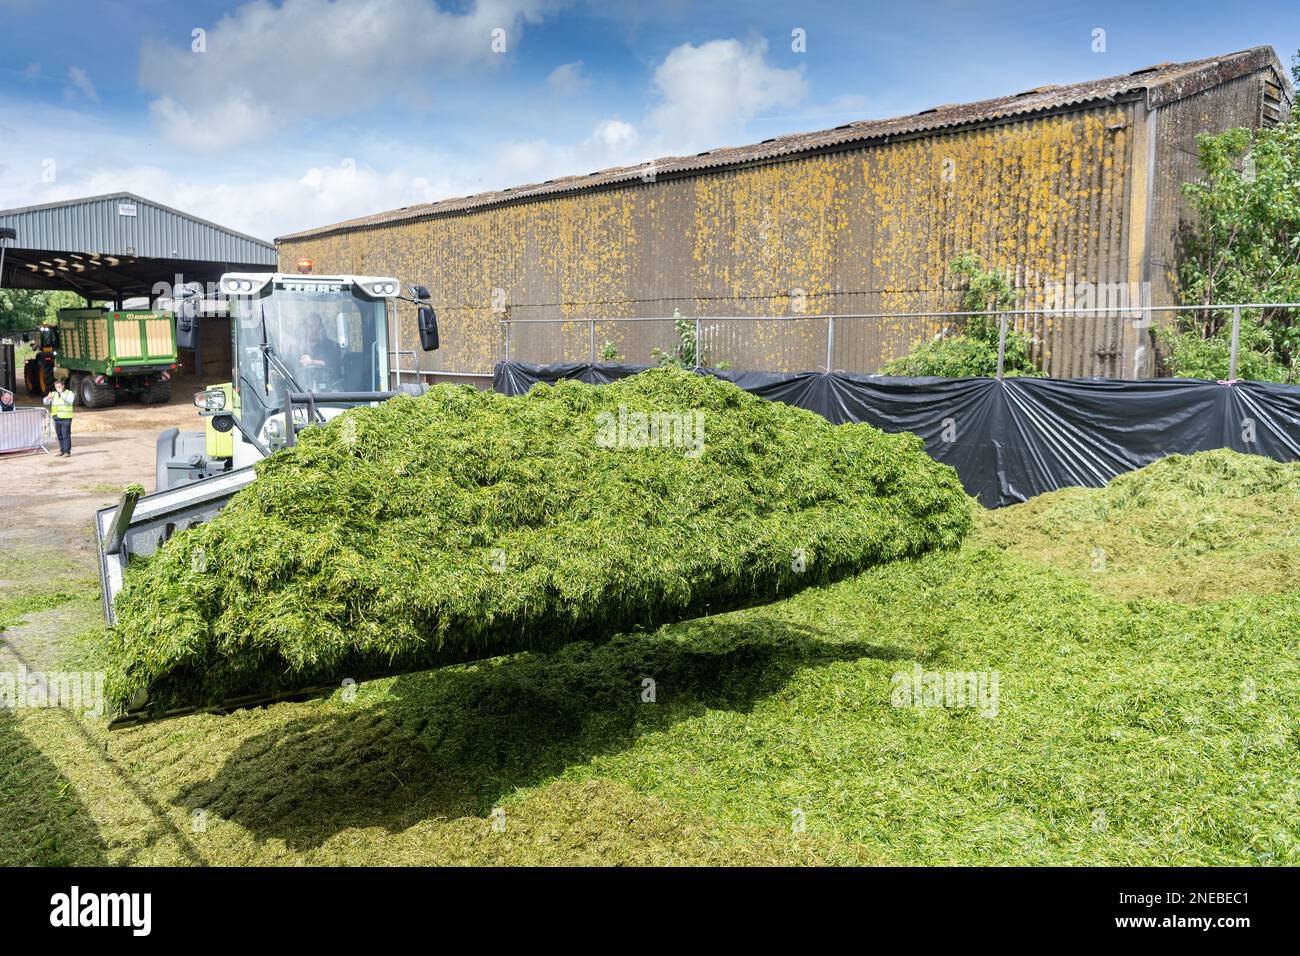 Lavorare su una pinza per insilato con una pala Class che utilizza una benna per caricatore grande per spostare l'erba e livellare la fossa. Dumfries, Scozia, Regno Unito. Foto Stock